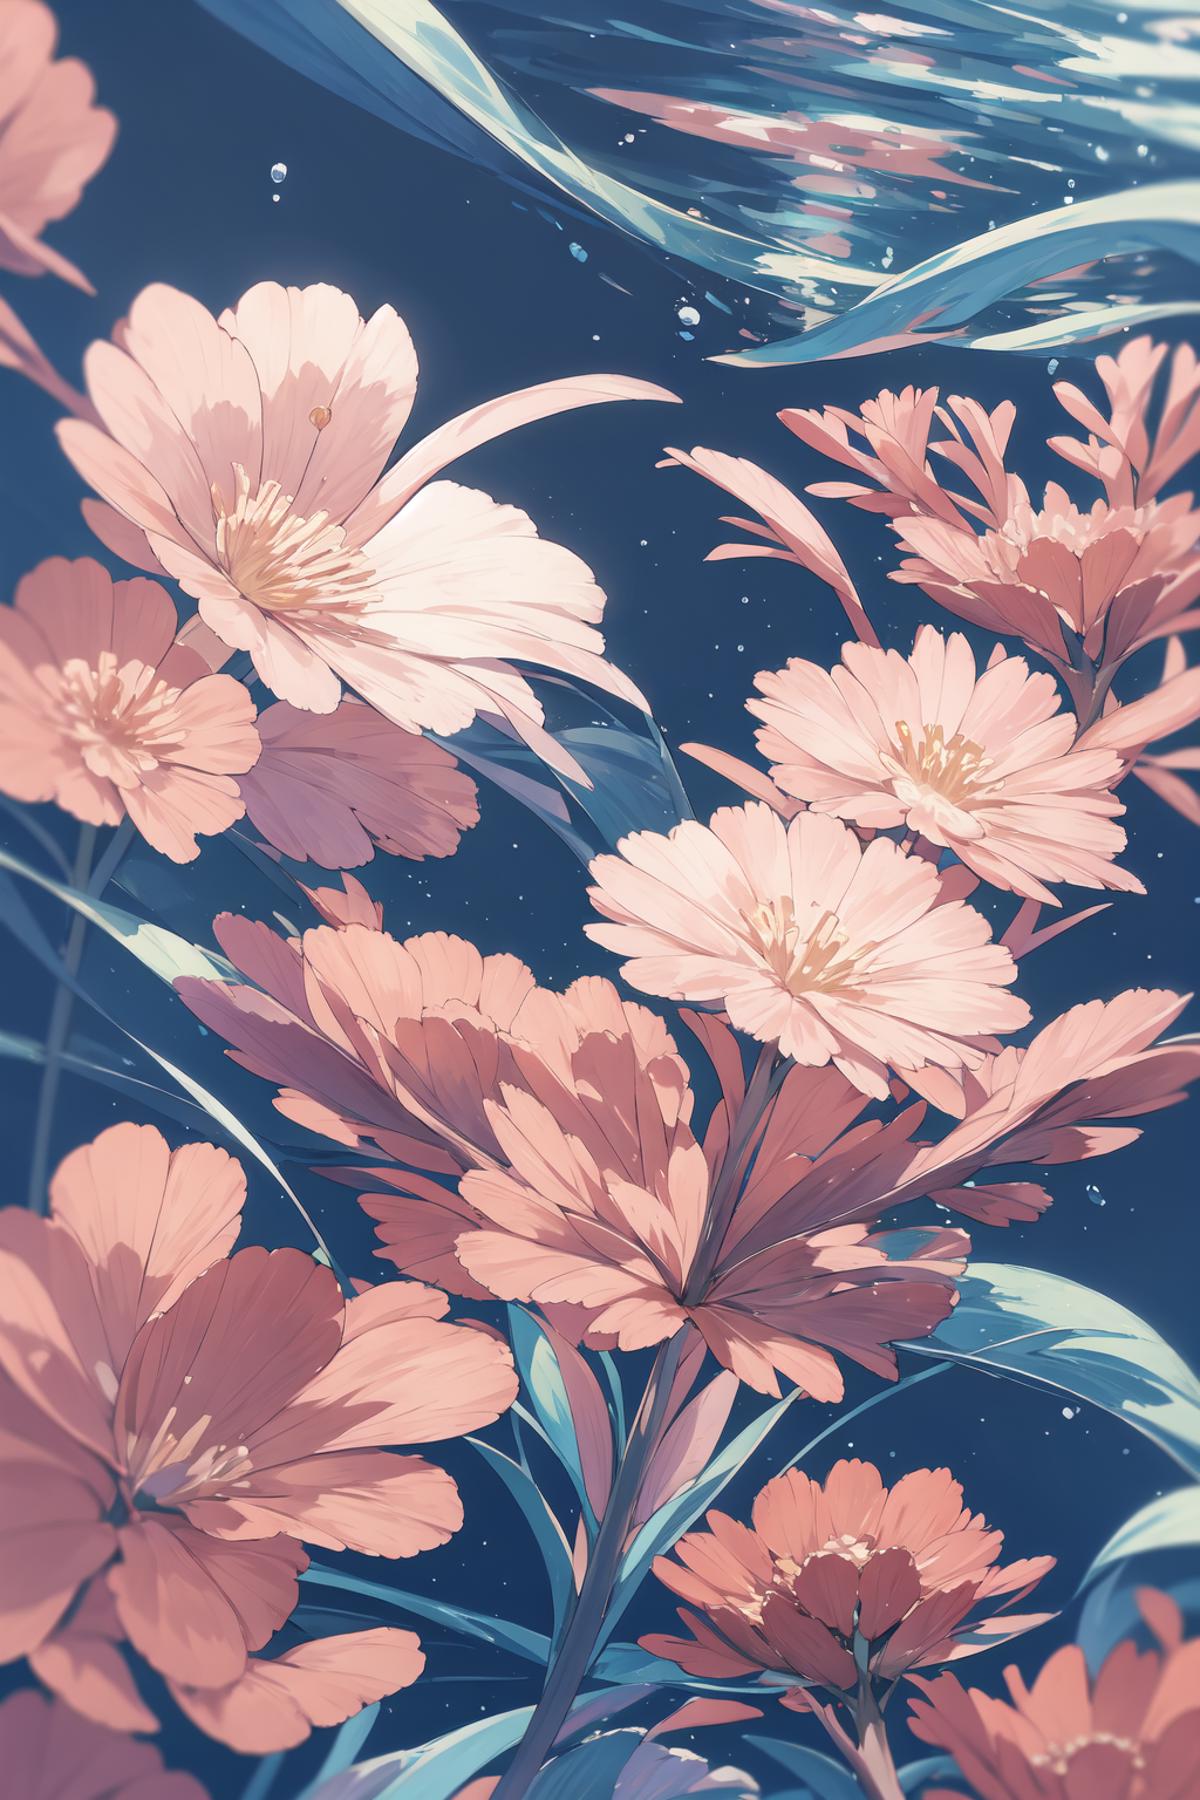 Flowersea (花 | 海 | 泡沫) image by Junbegun